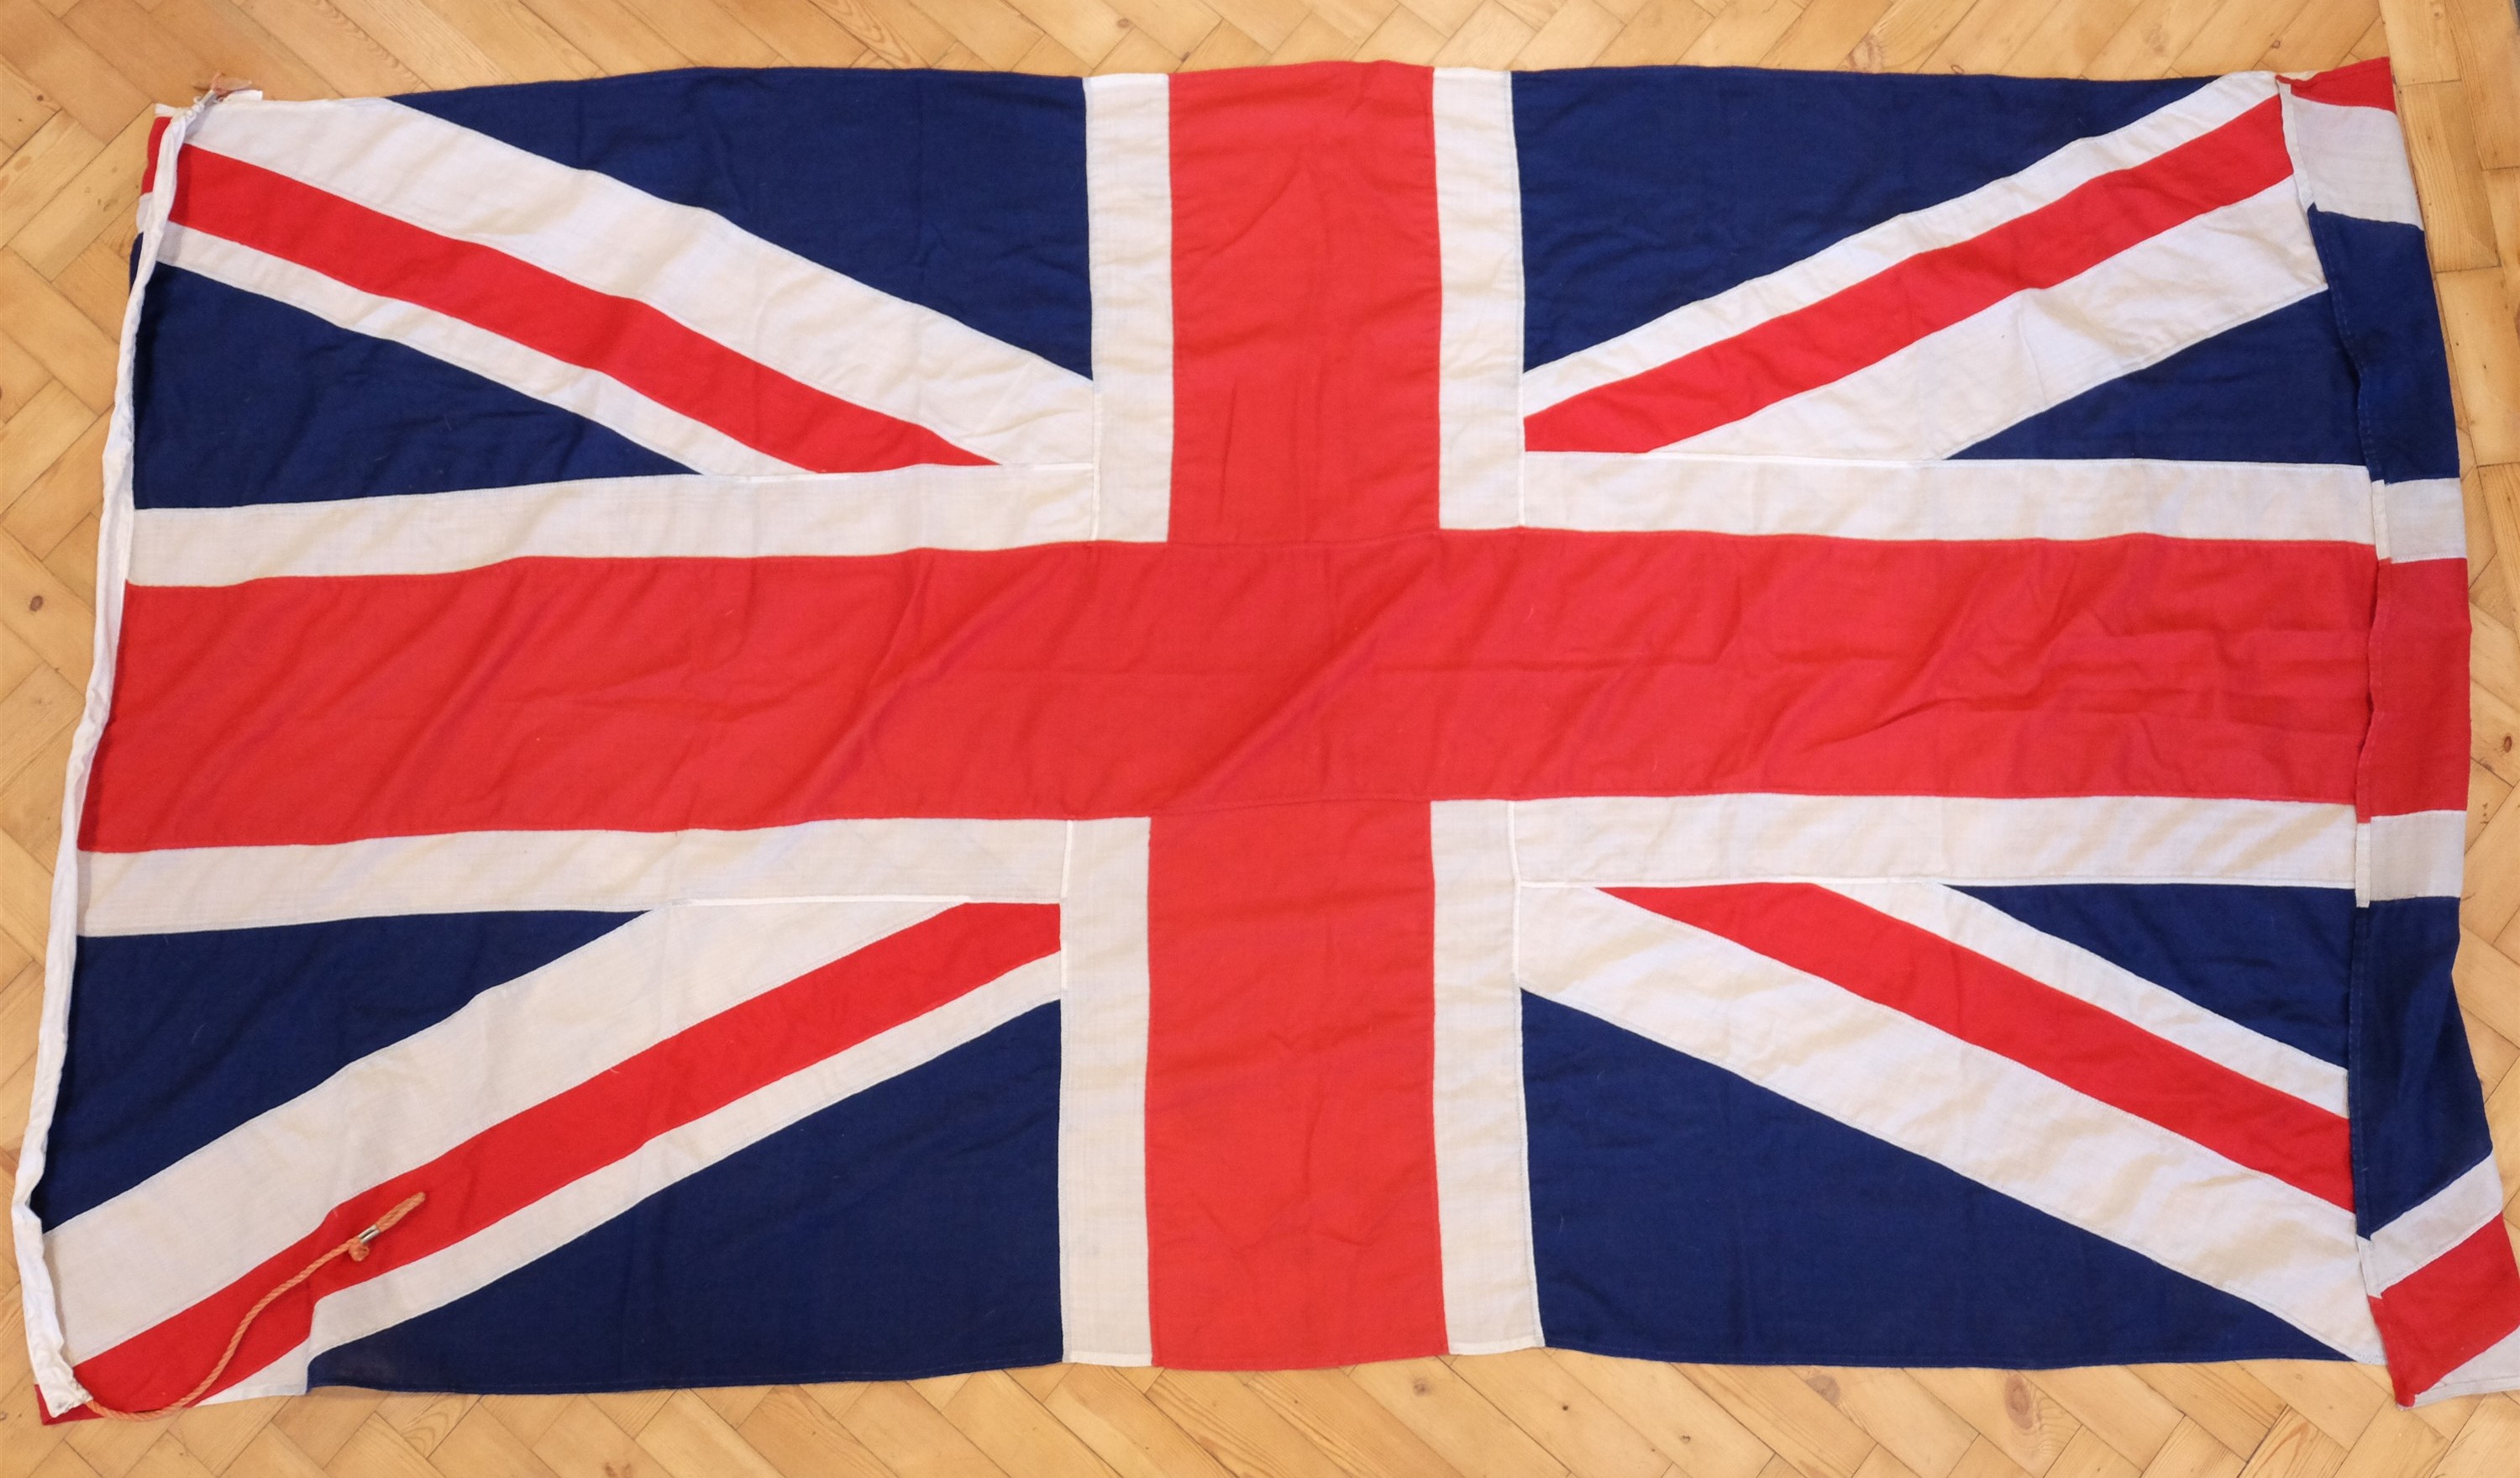 A vintage Union Jack flag, 270 x 140 cm